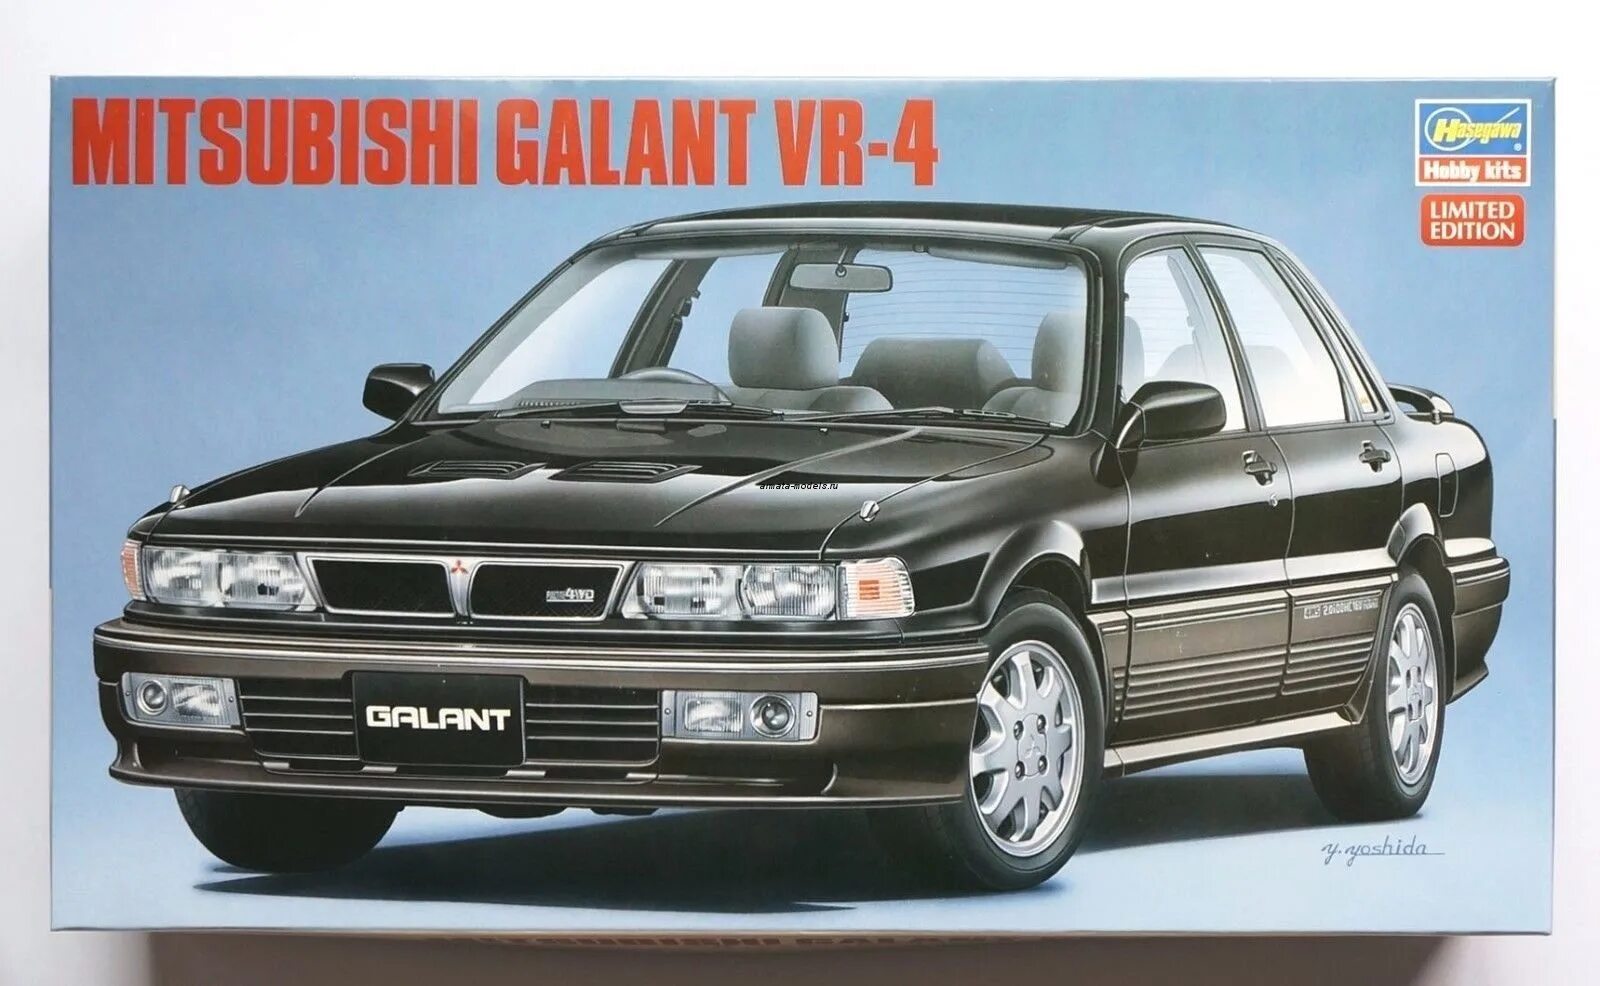 Mitsubishi 24. Mitsubishi Galant vr4 1:24. Galant 6 1/24. Модель автомобиля Mitsubishi Galant vr6 1:24. Hasegawa 20546-автомобиль Mitsubishi Galant VR-4.